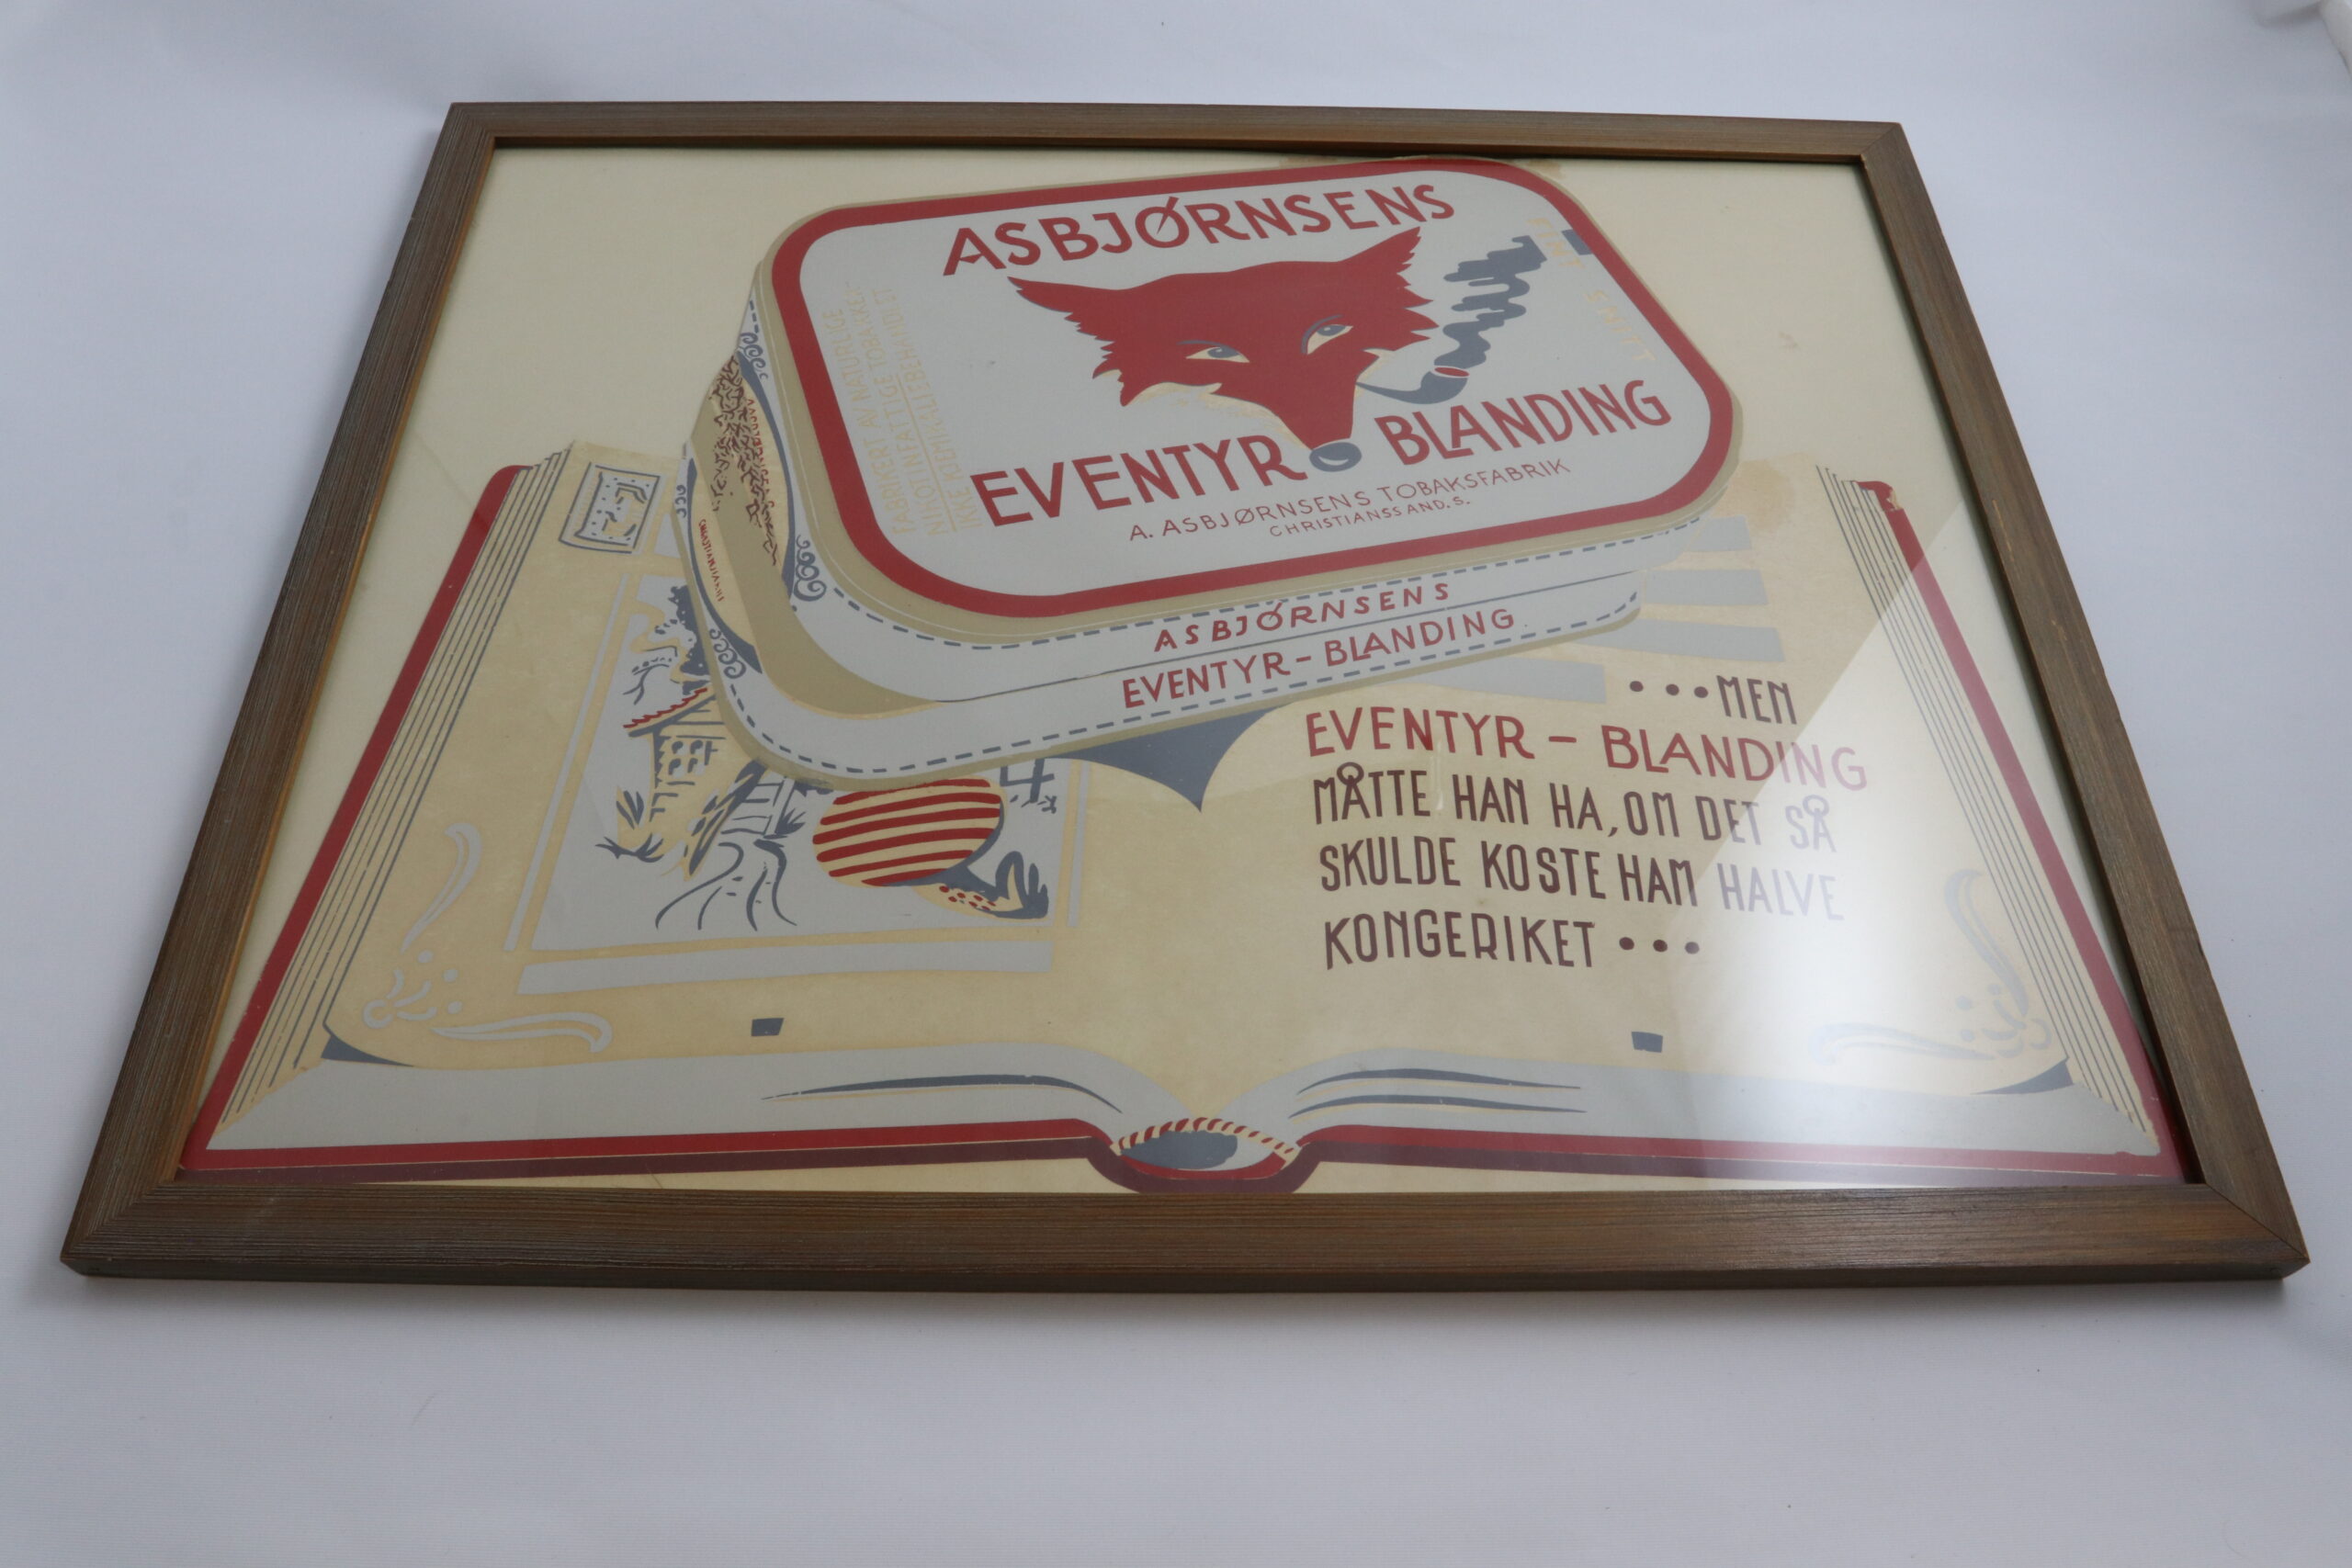 Reklameplakat for Eventyrblanding fra A. Asbjørnsens Tobaksfabrik. Foto: Vest-Agder-museet.